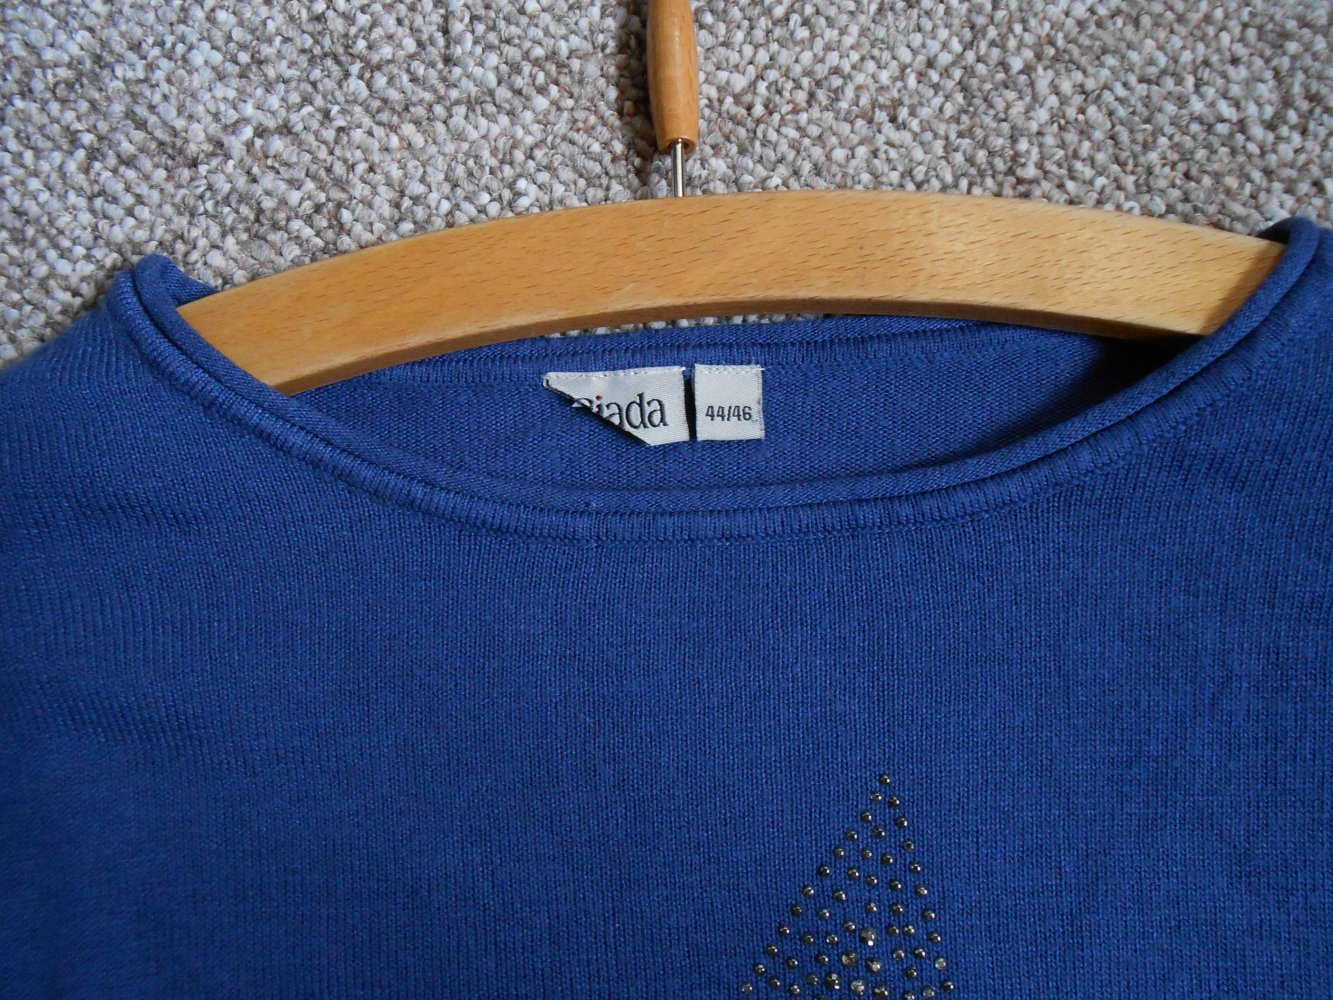 Blauer Pullover mit Stern